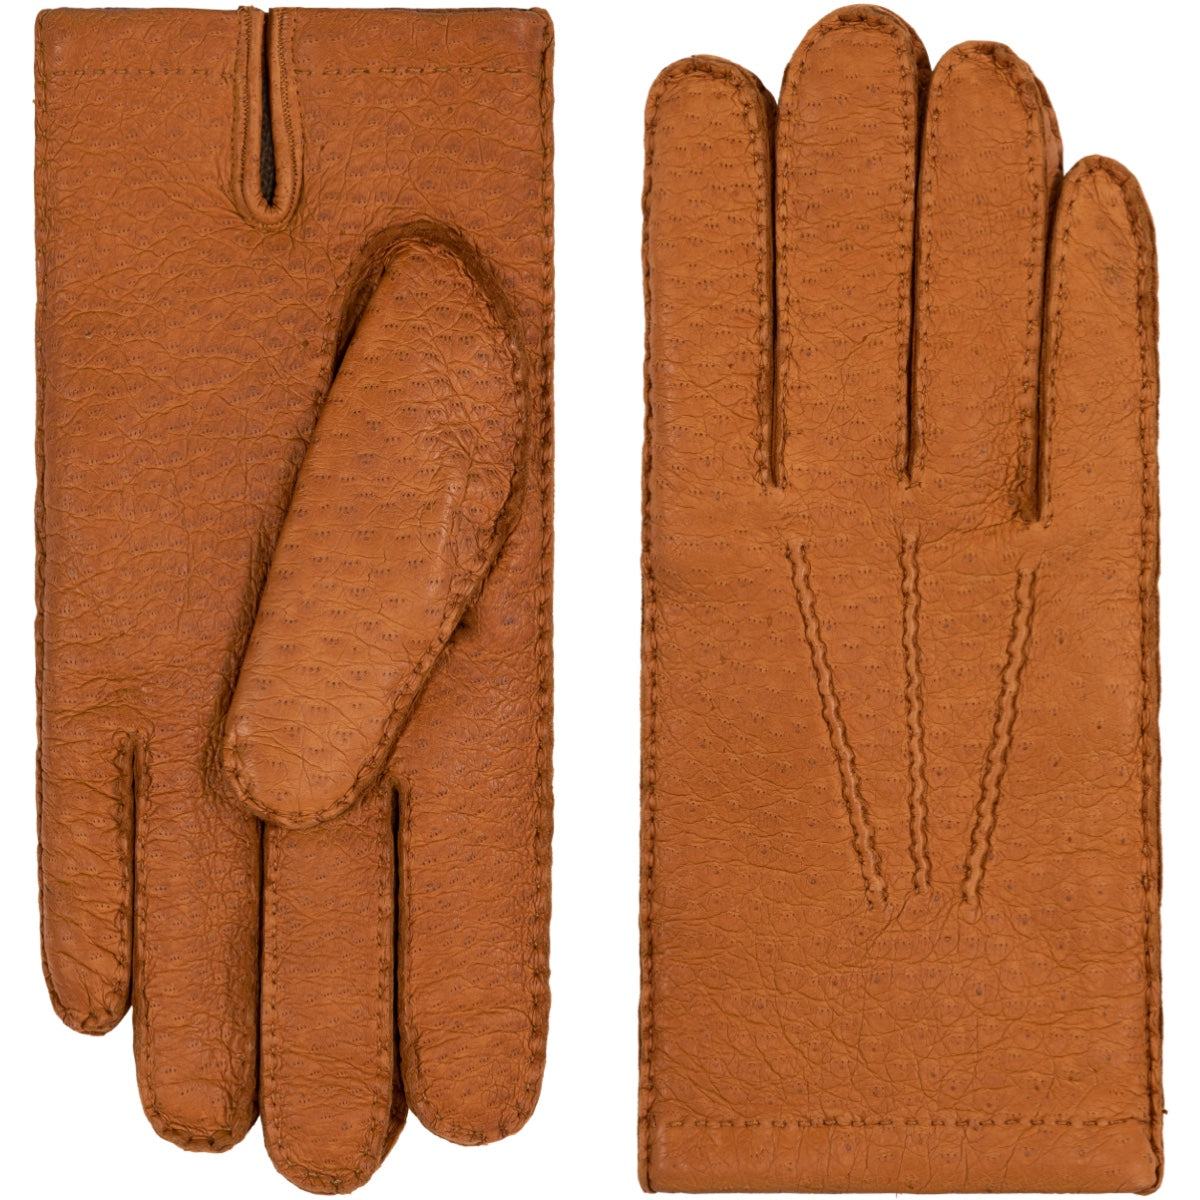 Kaschmirfutter Handschuhe Peccary-Leder - (Braun) aus mit Antonio